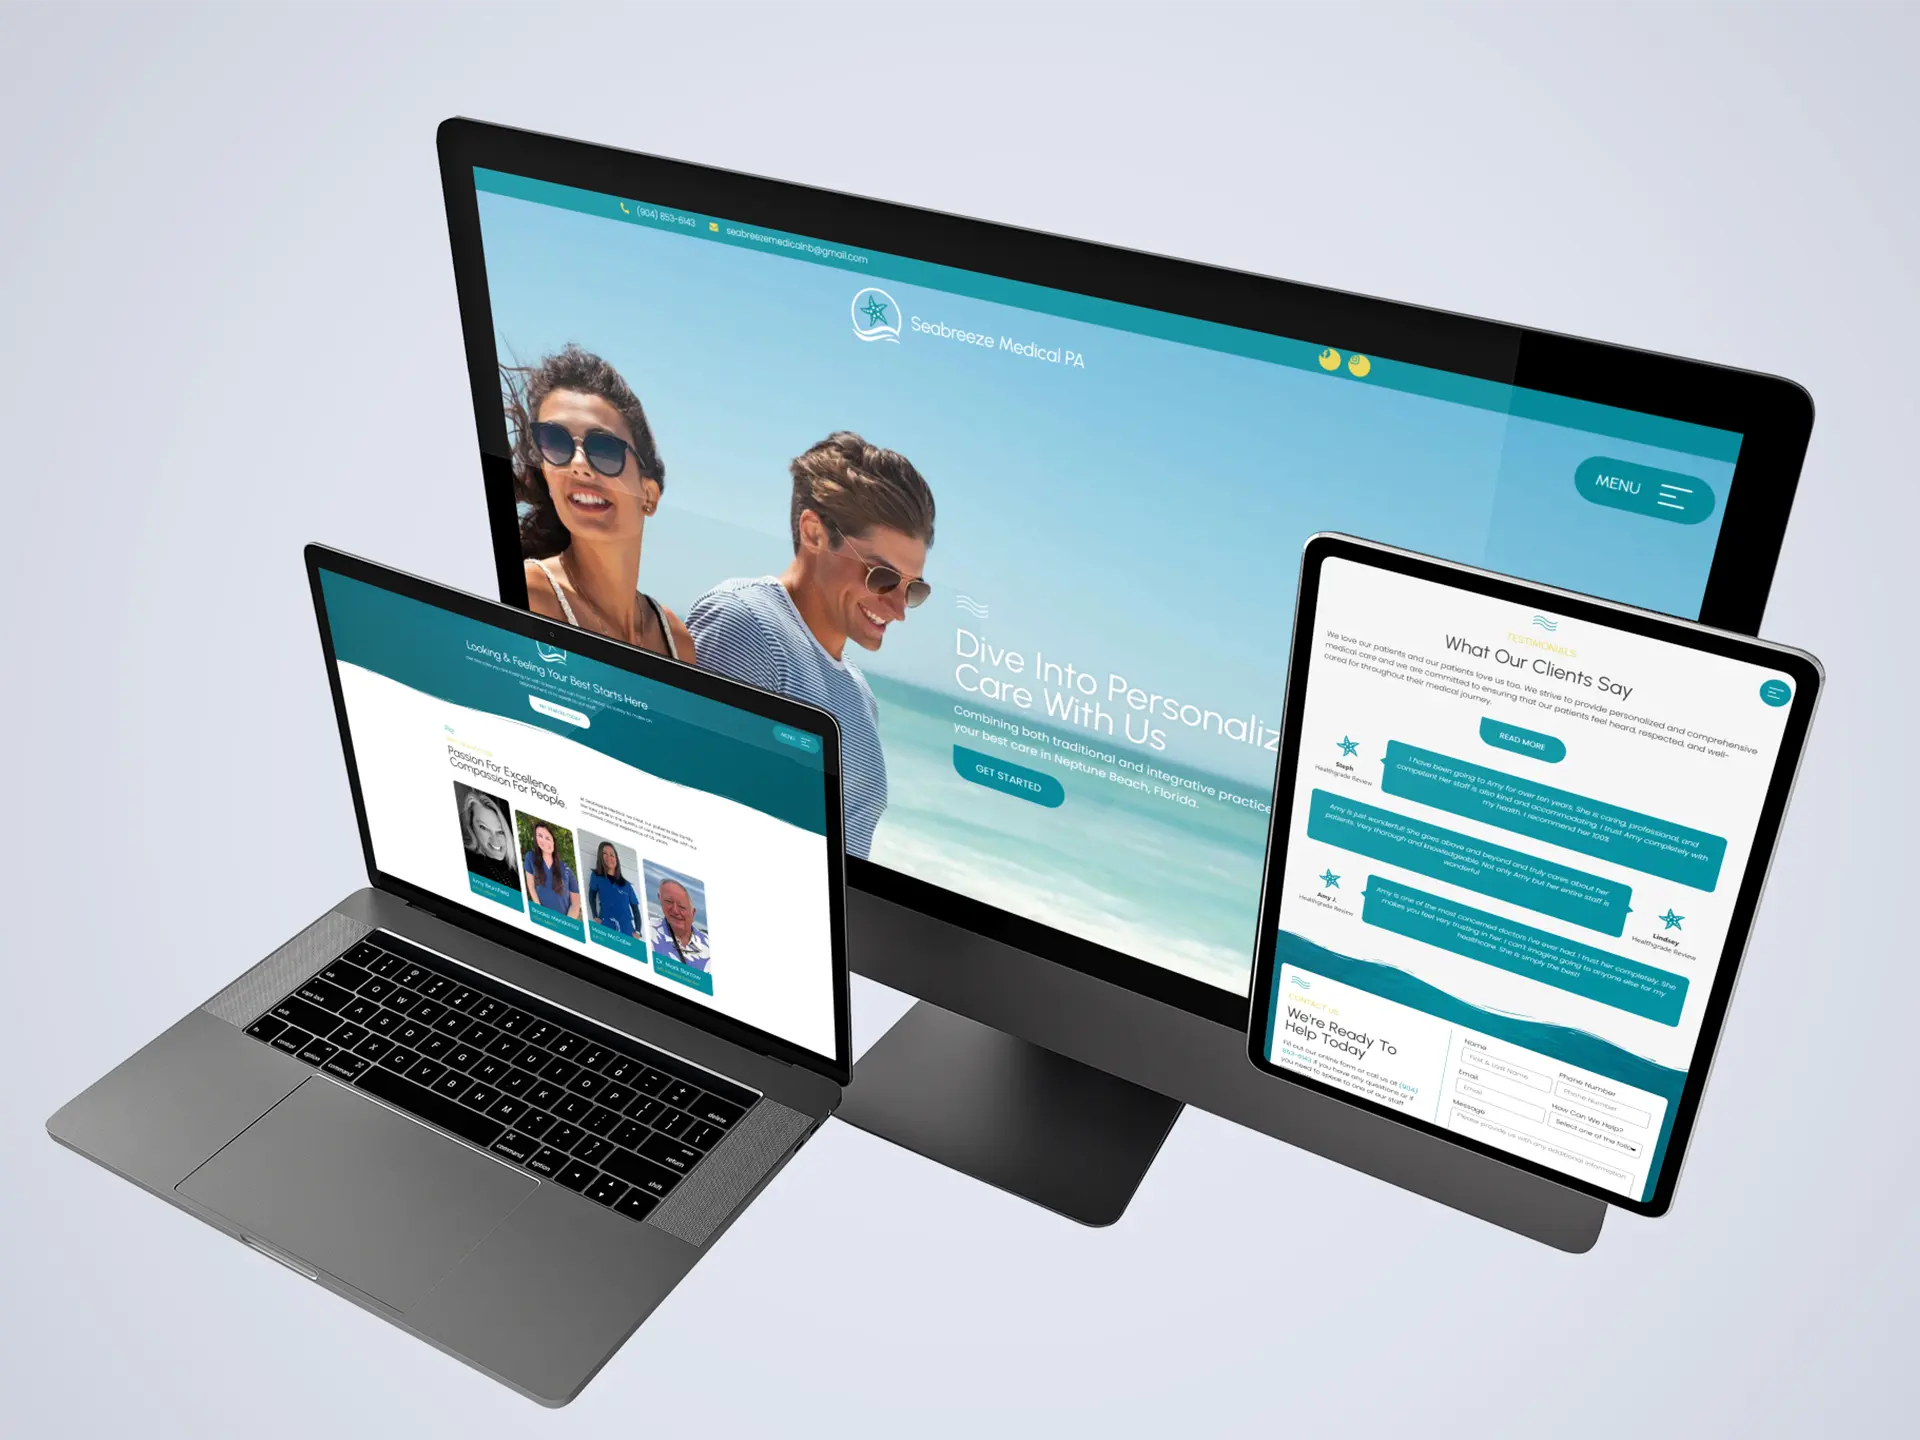 Seabreeze Medical PA Website | Digital Marketing for Doctors